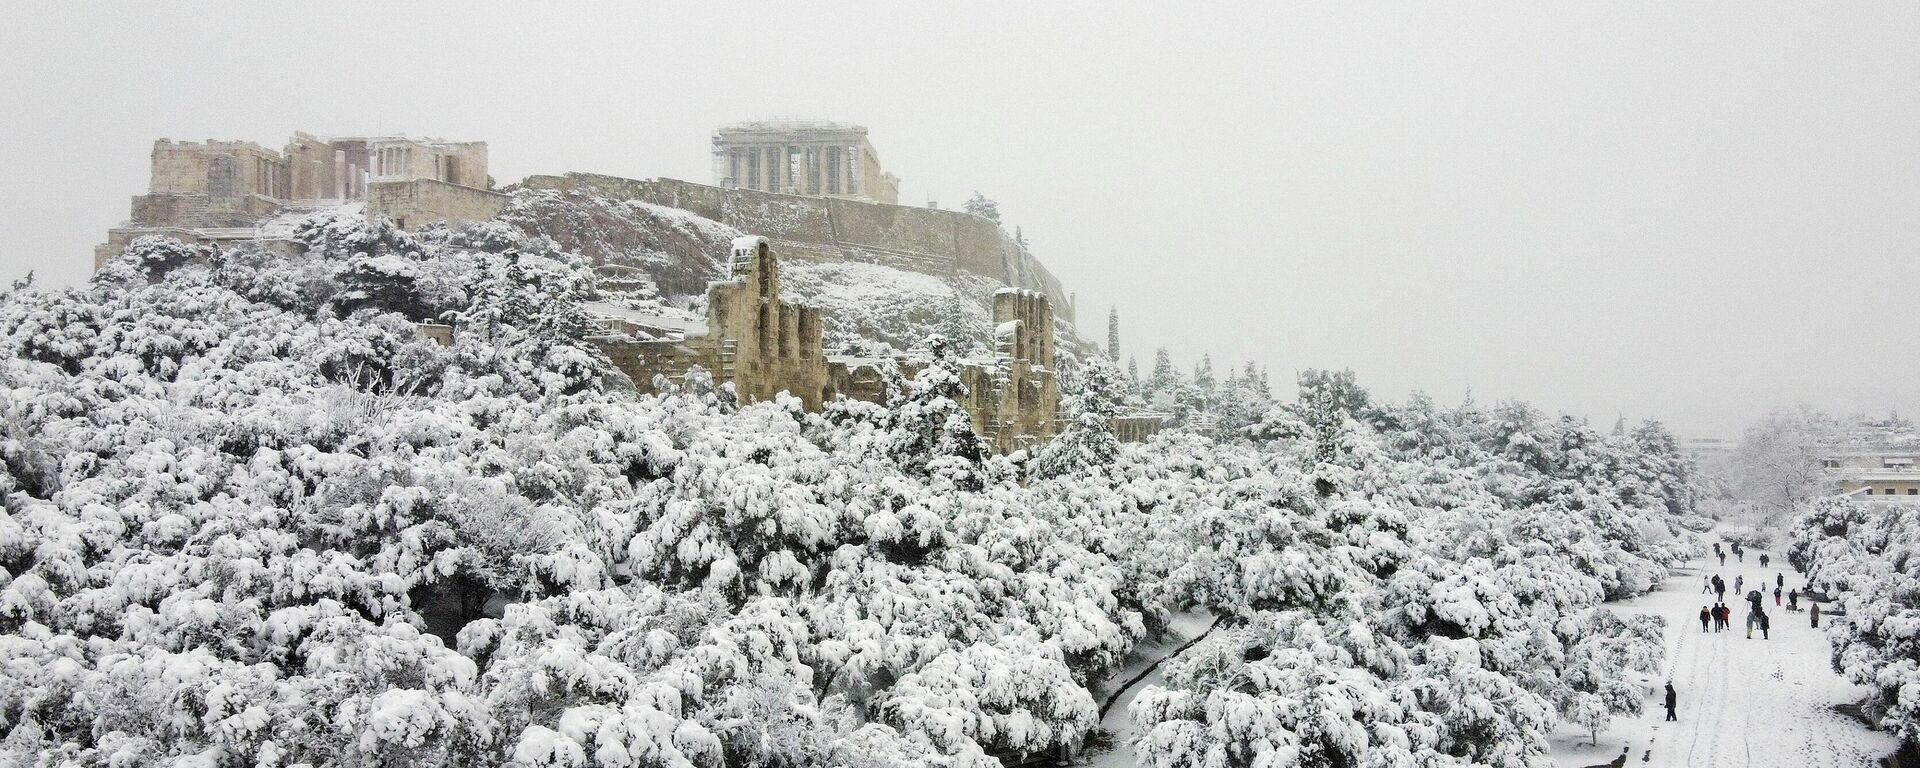 Una fuerte nevada en Atenas, Grecia - Sputnik Mundo, 1920, 16.02.2021